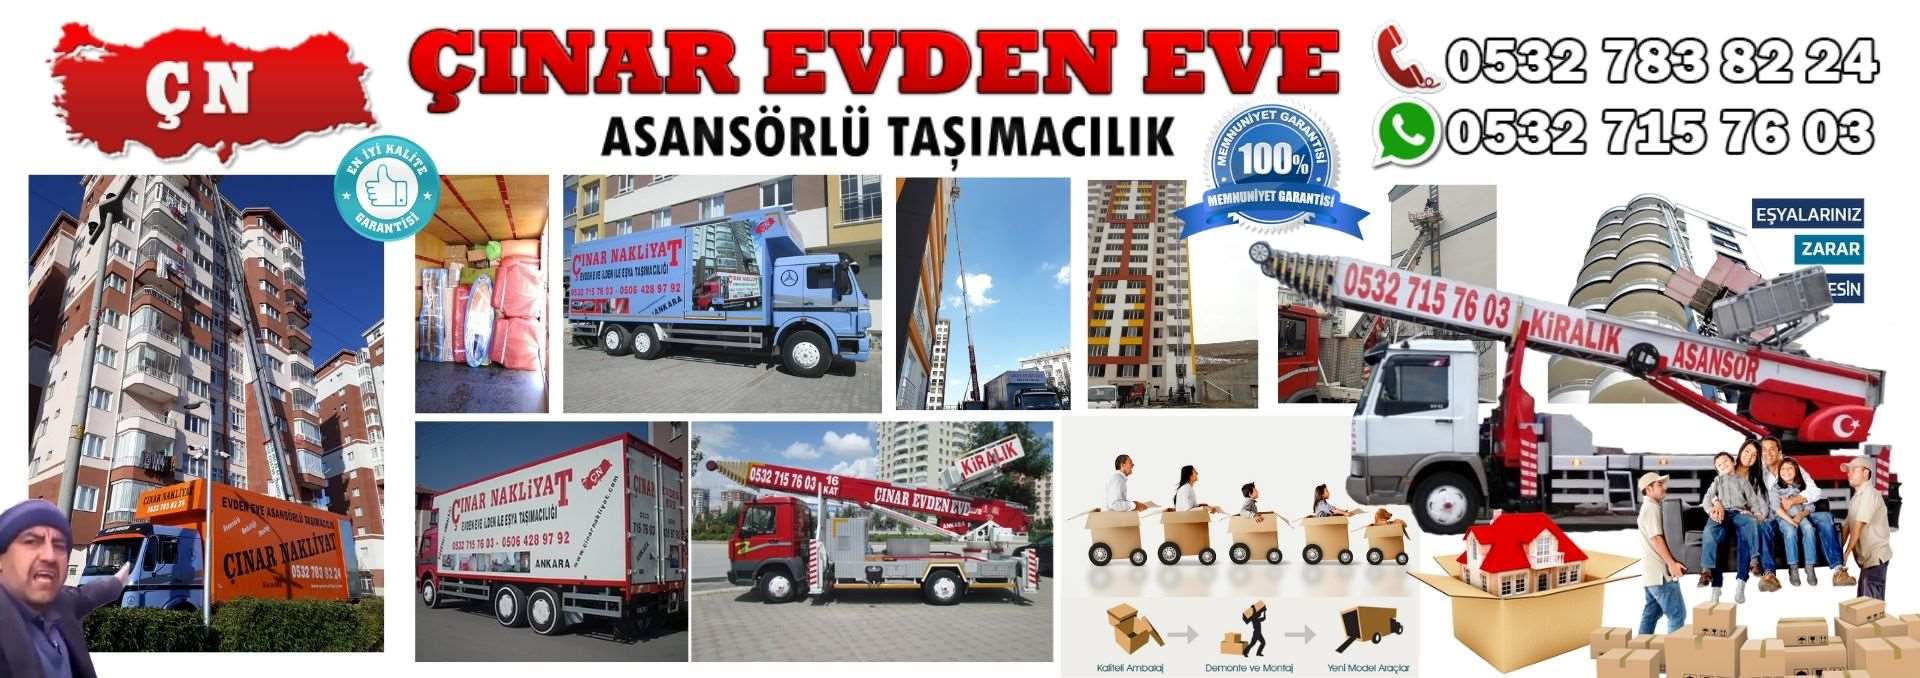 Ankara Çubuk Evden Eve Asansörlü Ev Eşyası Taşıma 0532 715 76 03